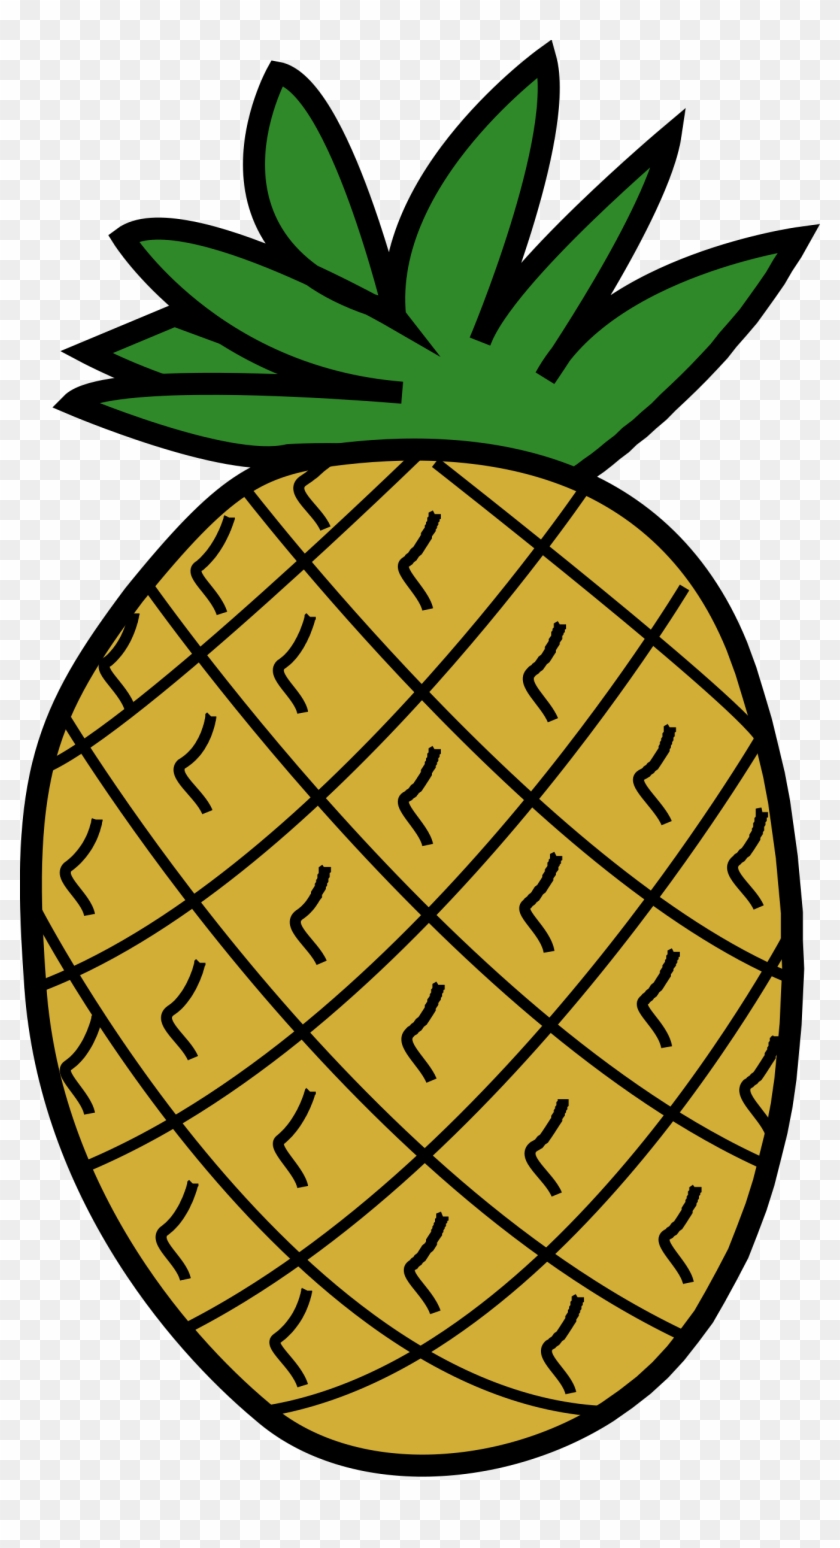 Clipart Pineapple - Clip Art Pineapple #385213